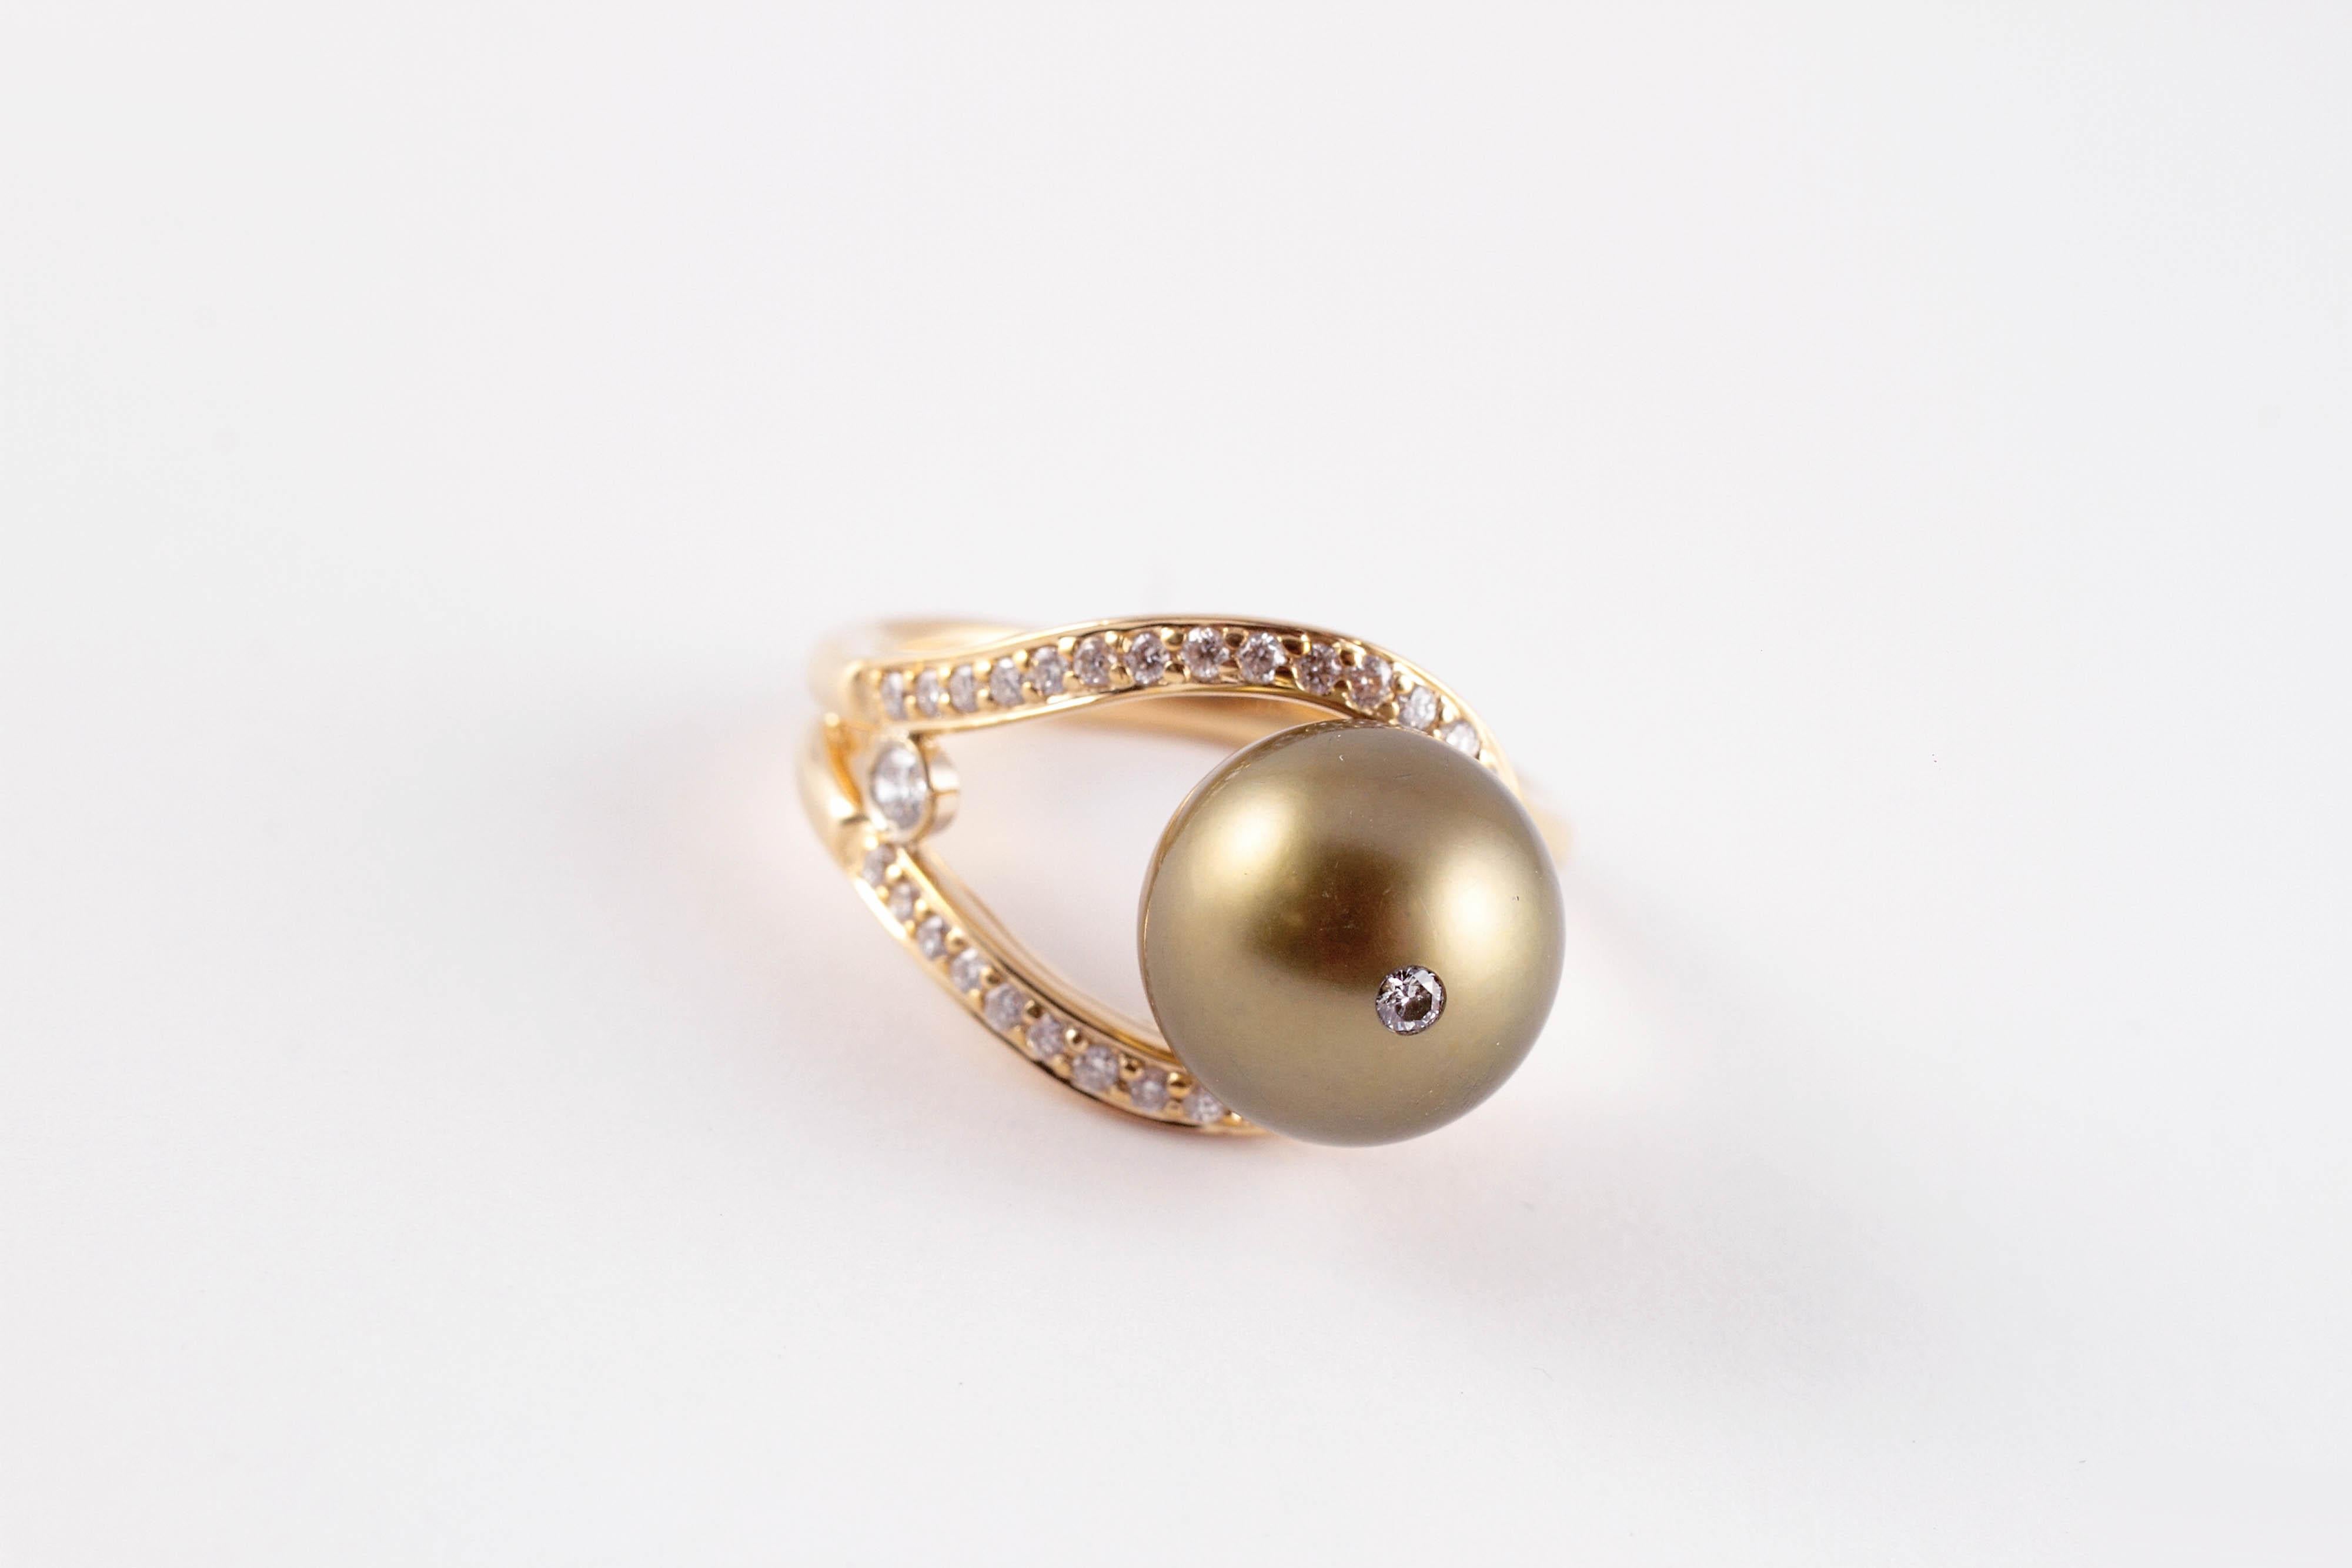 Diese wunderschöne 11,00 mm Tahiti-Perle wird durch einen kleinen Diamanten an der Spitze noch schöner!  Bestehend aus 14 Karat Gelbgold, mit Akzent Diamanten in der Band, ist dieser Ring von Honora eine Größe 8 1/4.